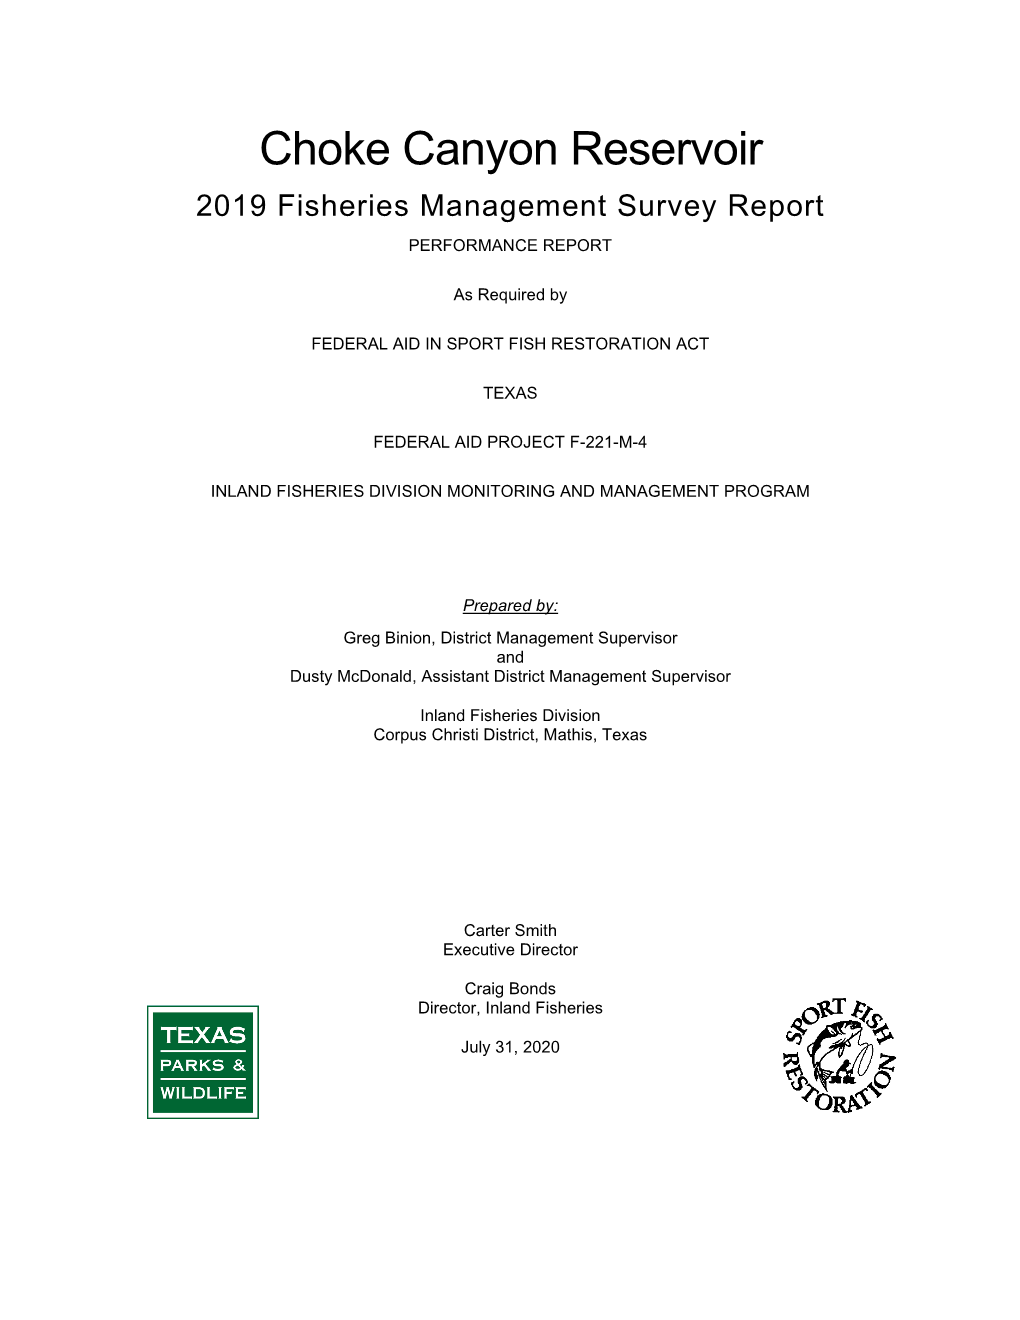 Choke Canyon Reservoir 2019 Survey Report